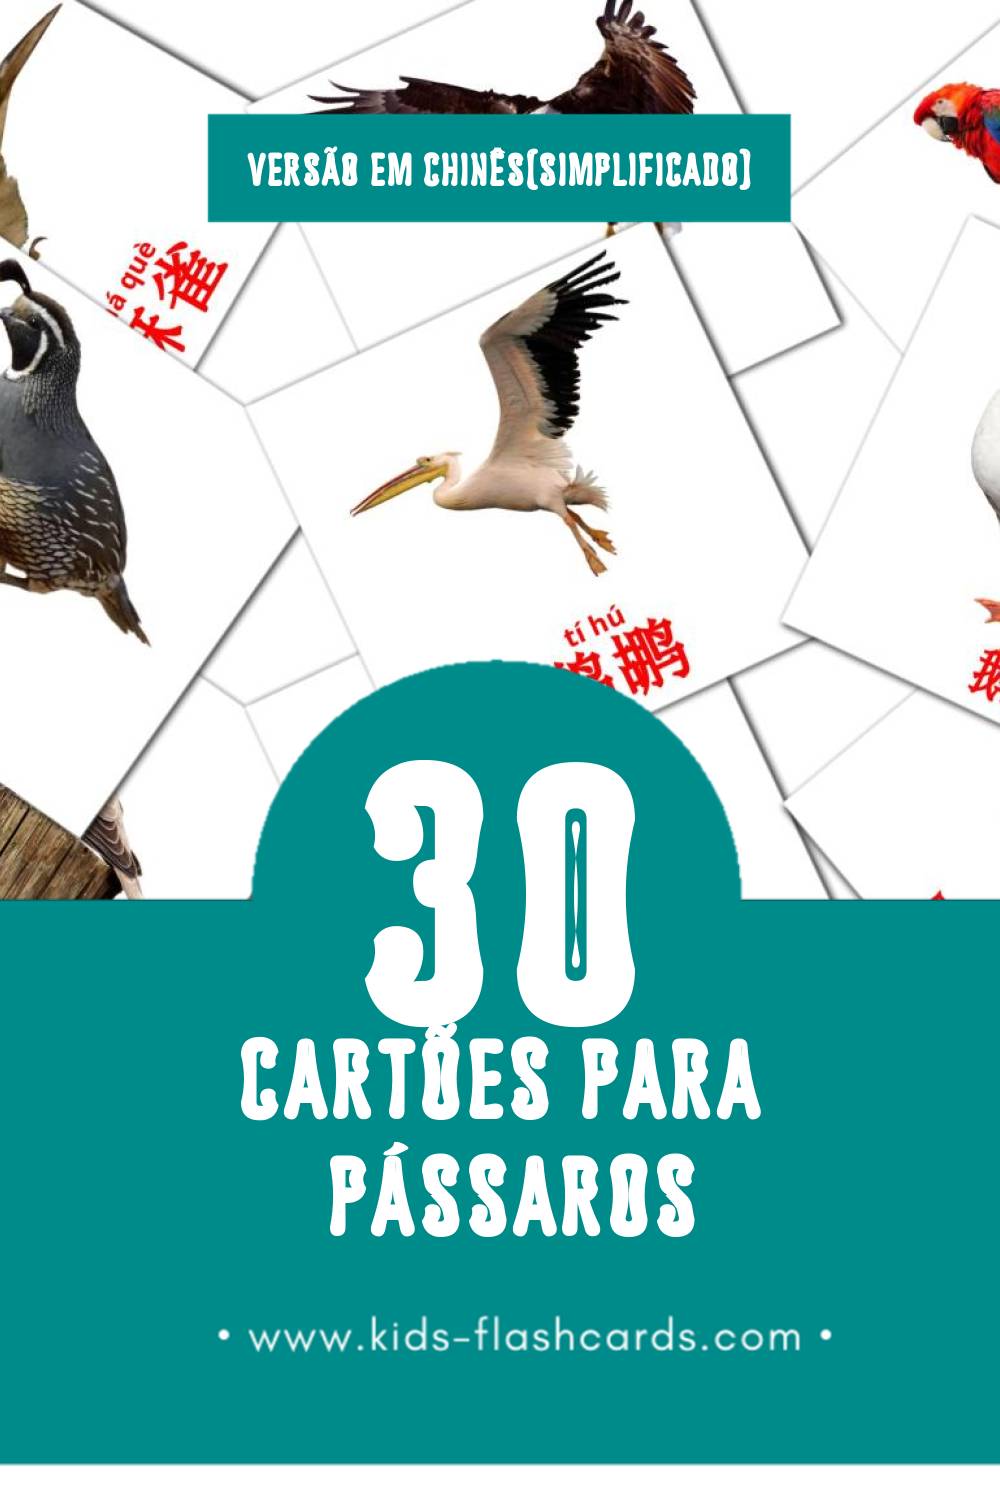 Flashcards de 鸟类 Visuais para Toddlers (30 cartões em Chinês(simplificado))